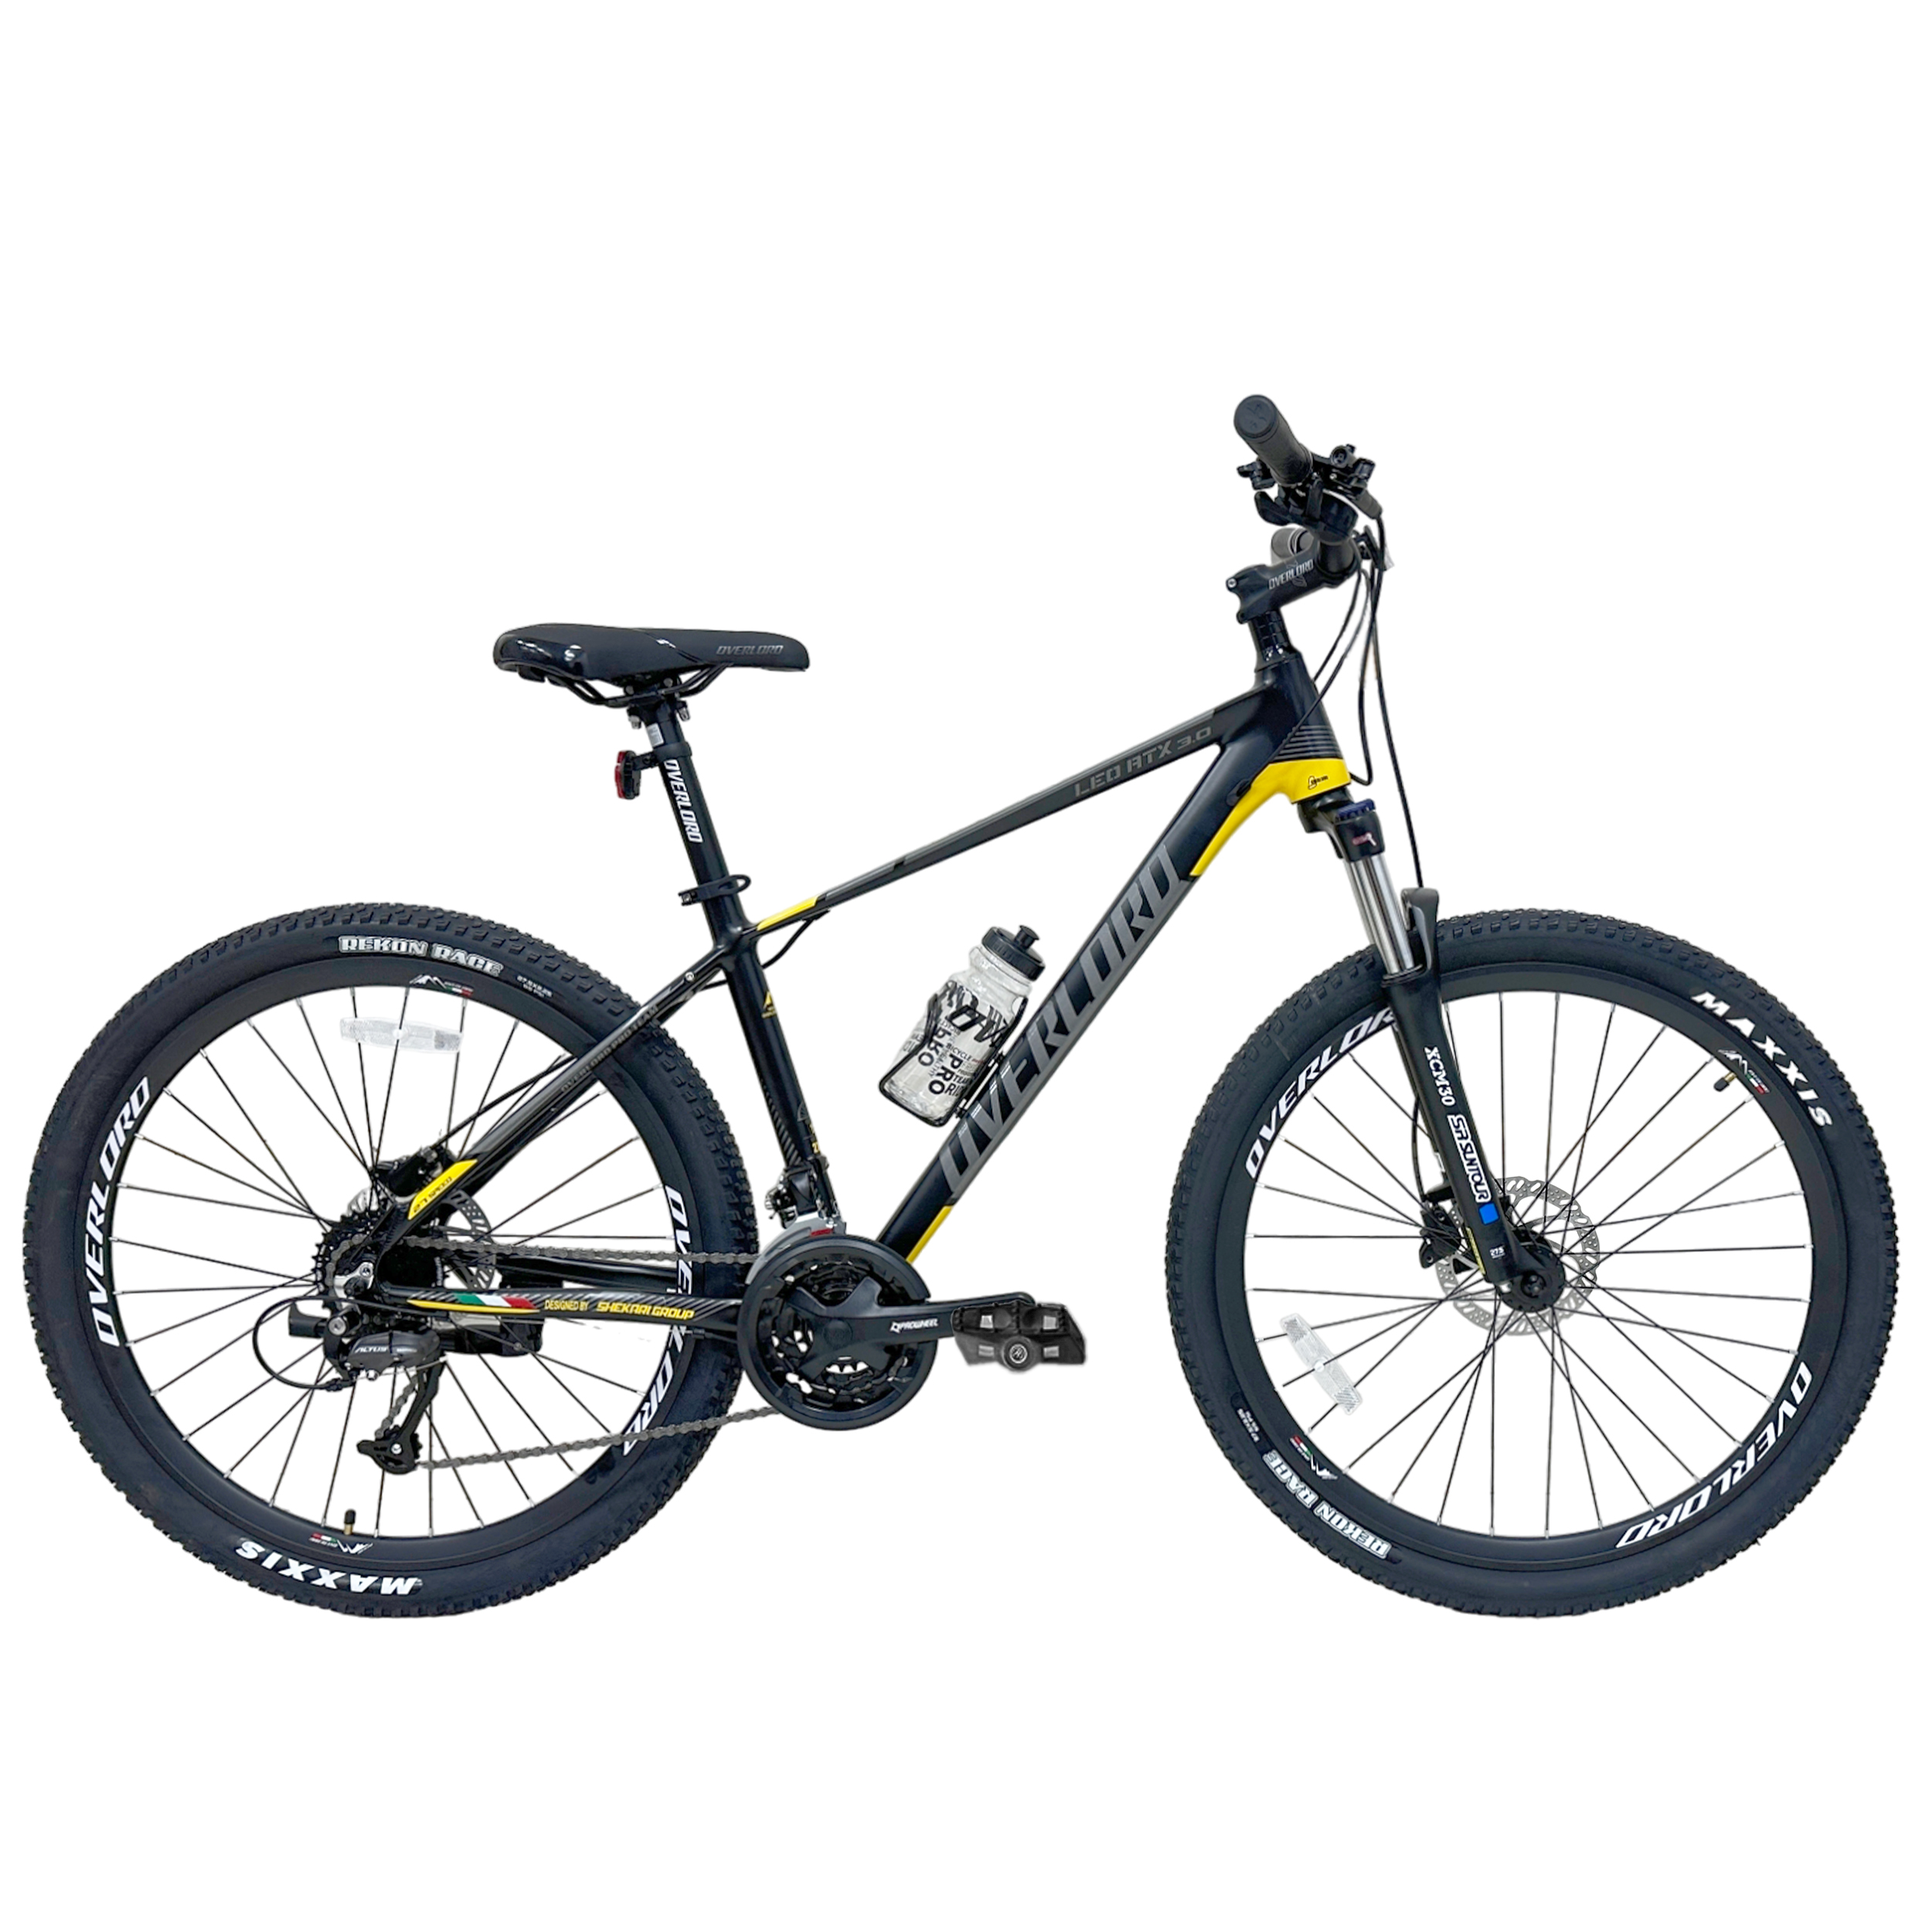 نکته خرید - قیمت روز دوچرخه کوهستان اورلورد مدل LEO ATX 3.0 هیدرولیکی سایز طوقه 27.5 خرید